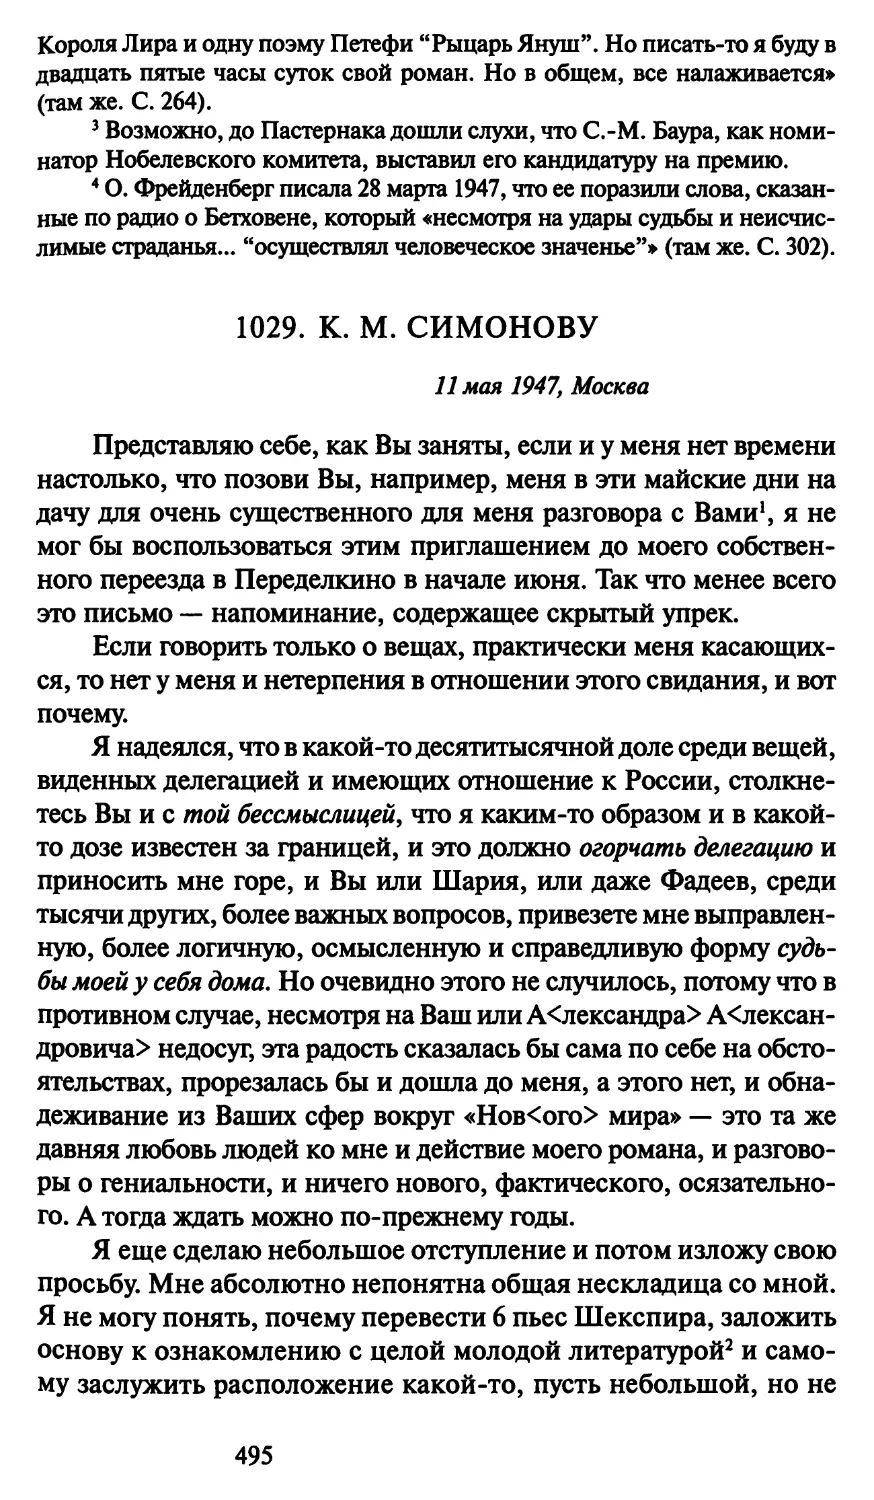 1029. К. М. Симонову 11 мая 1947